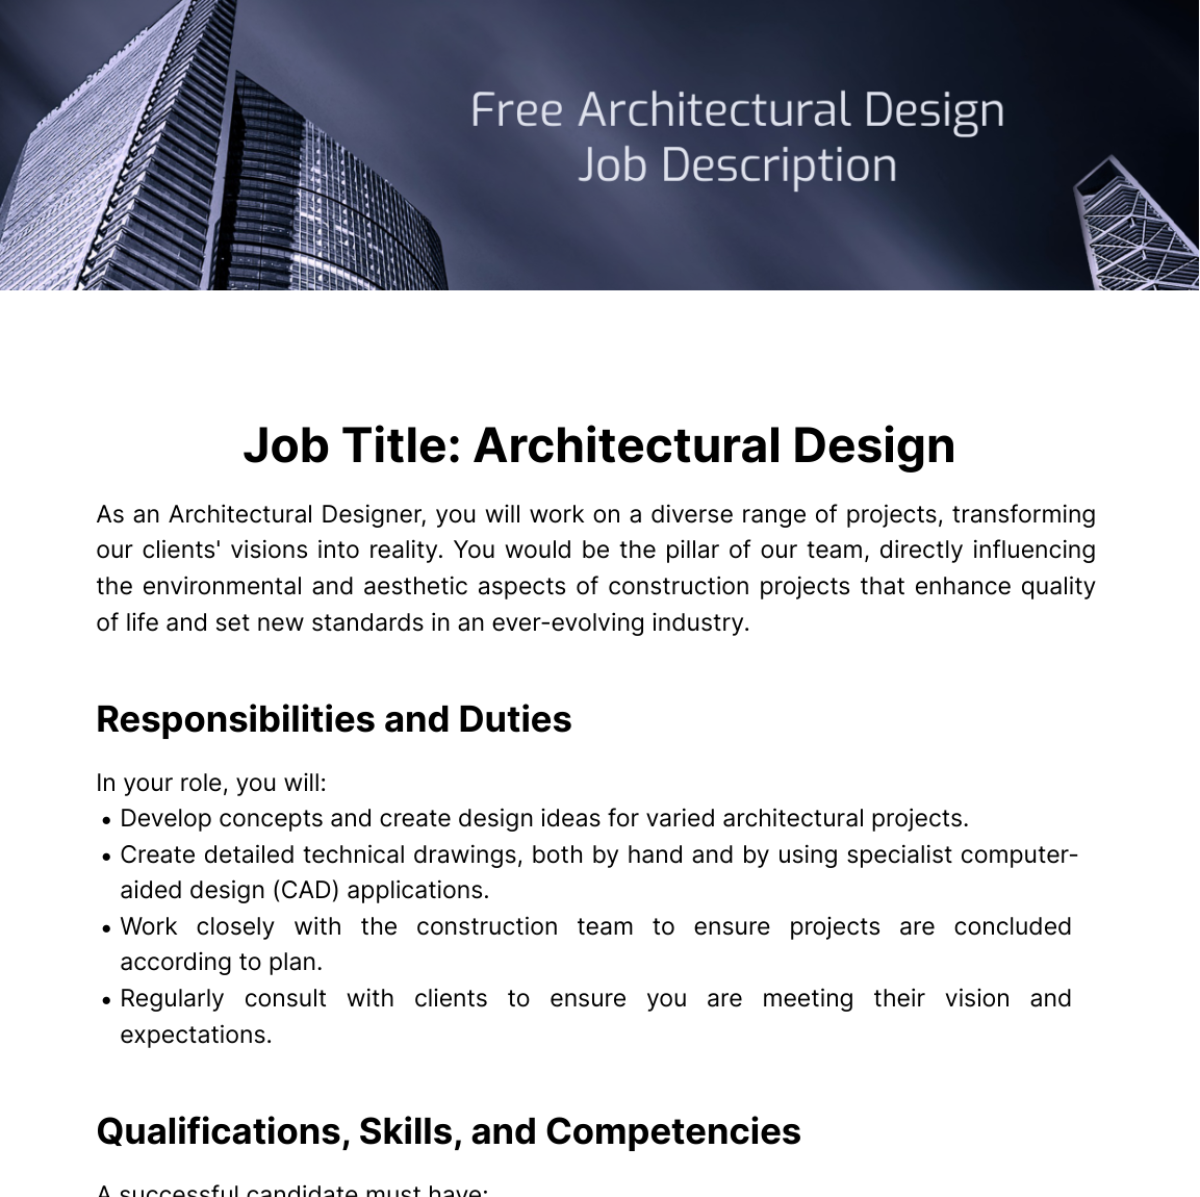 Free Architectural Design Job Description Template